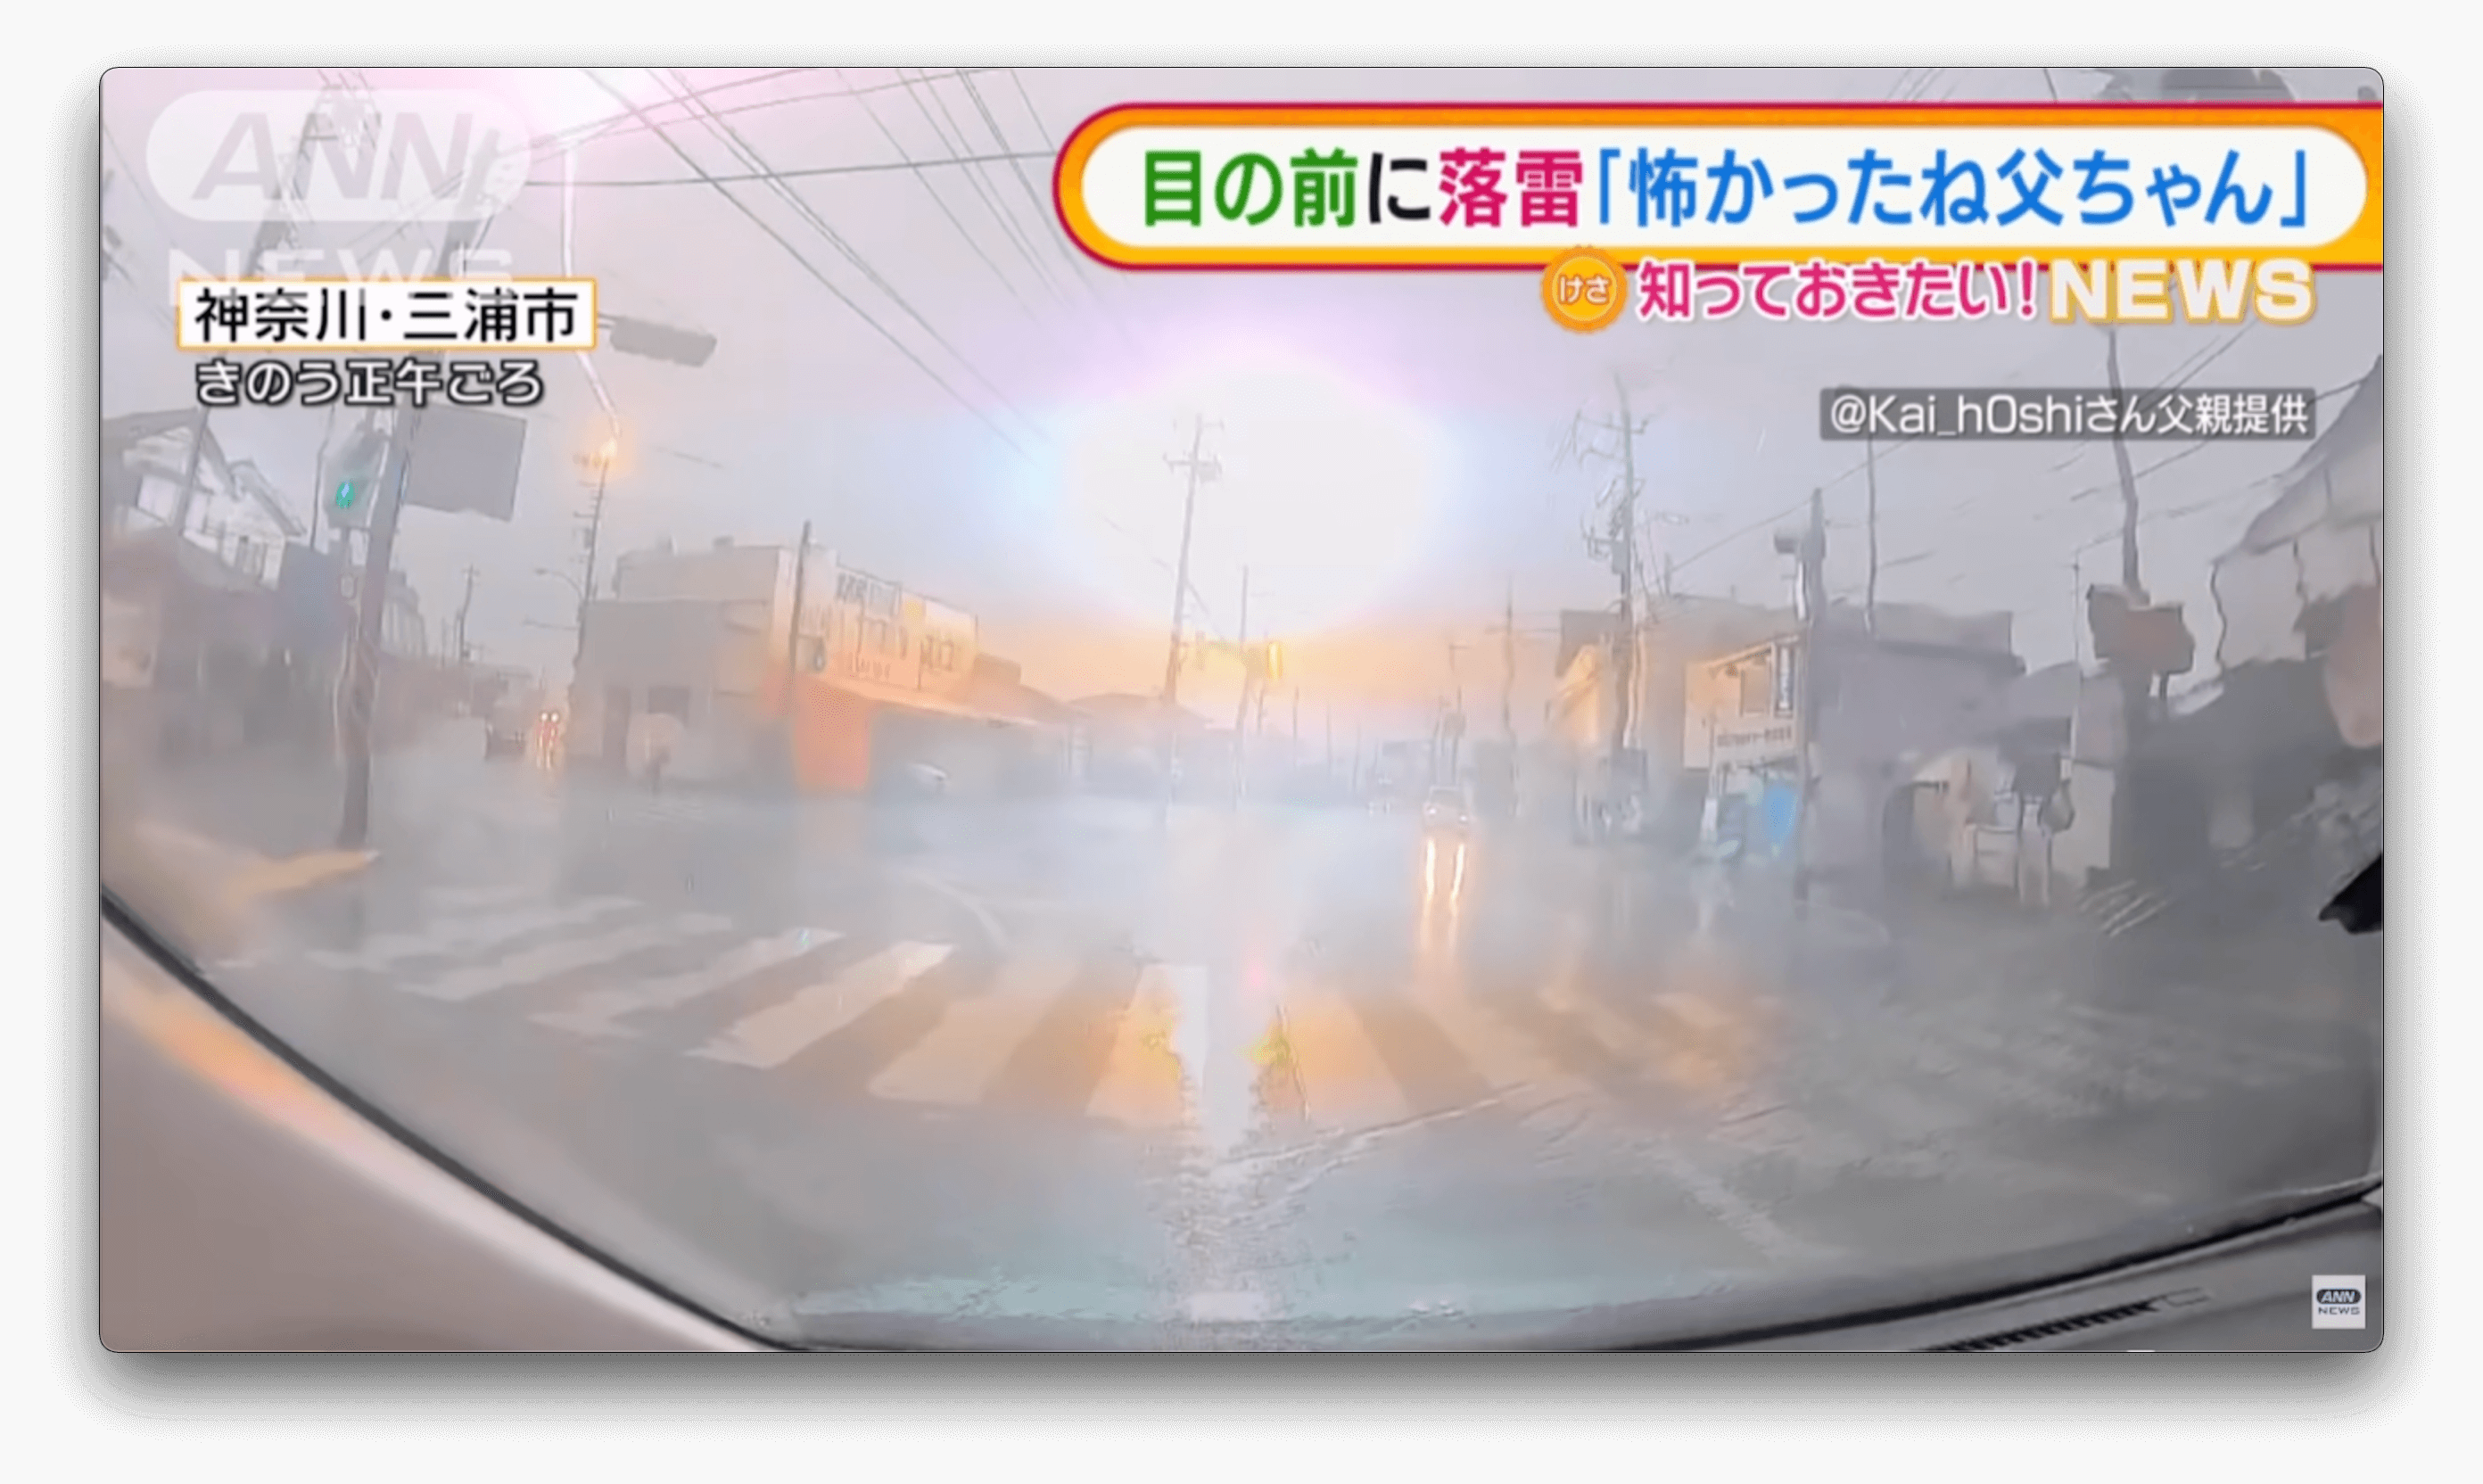 Vídeo flagra explosão em poste, causada por queda de um raio no Japão